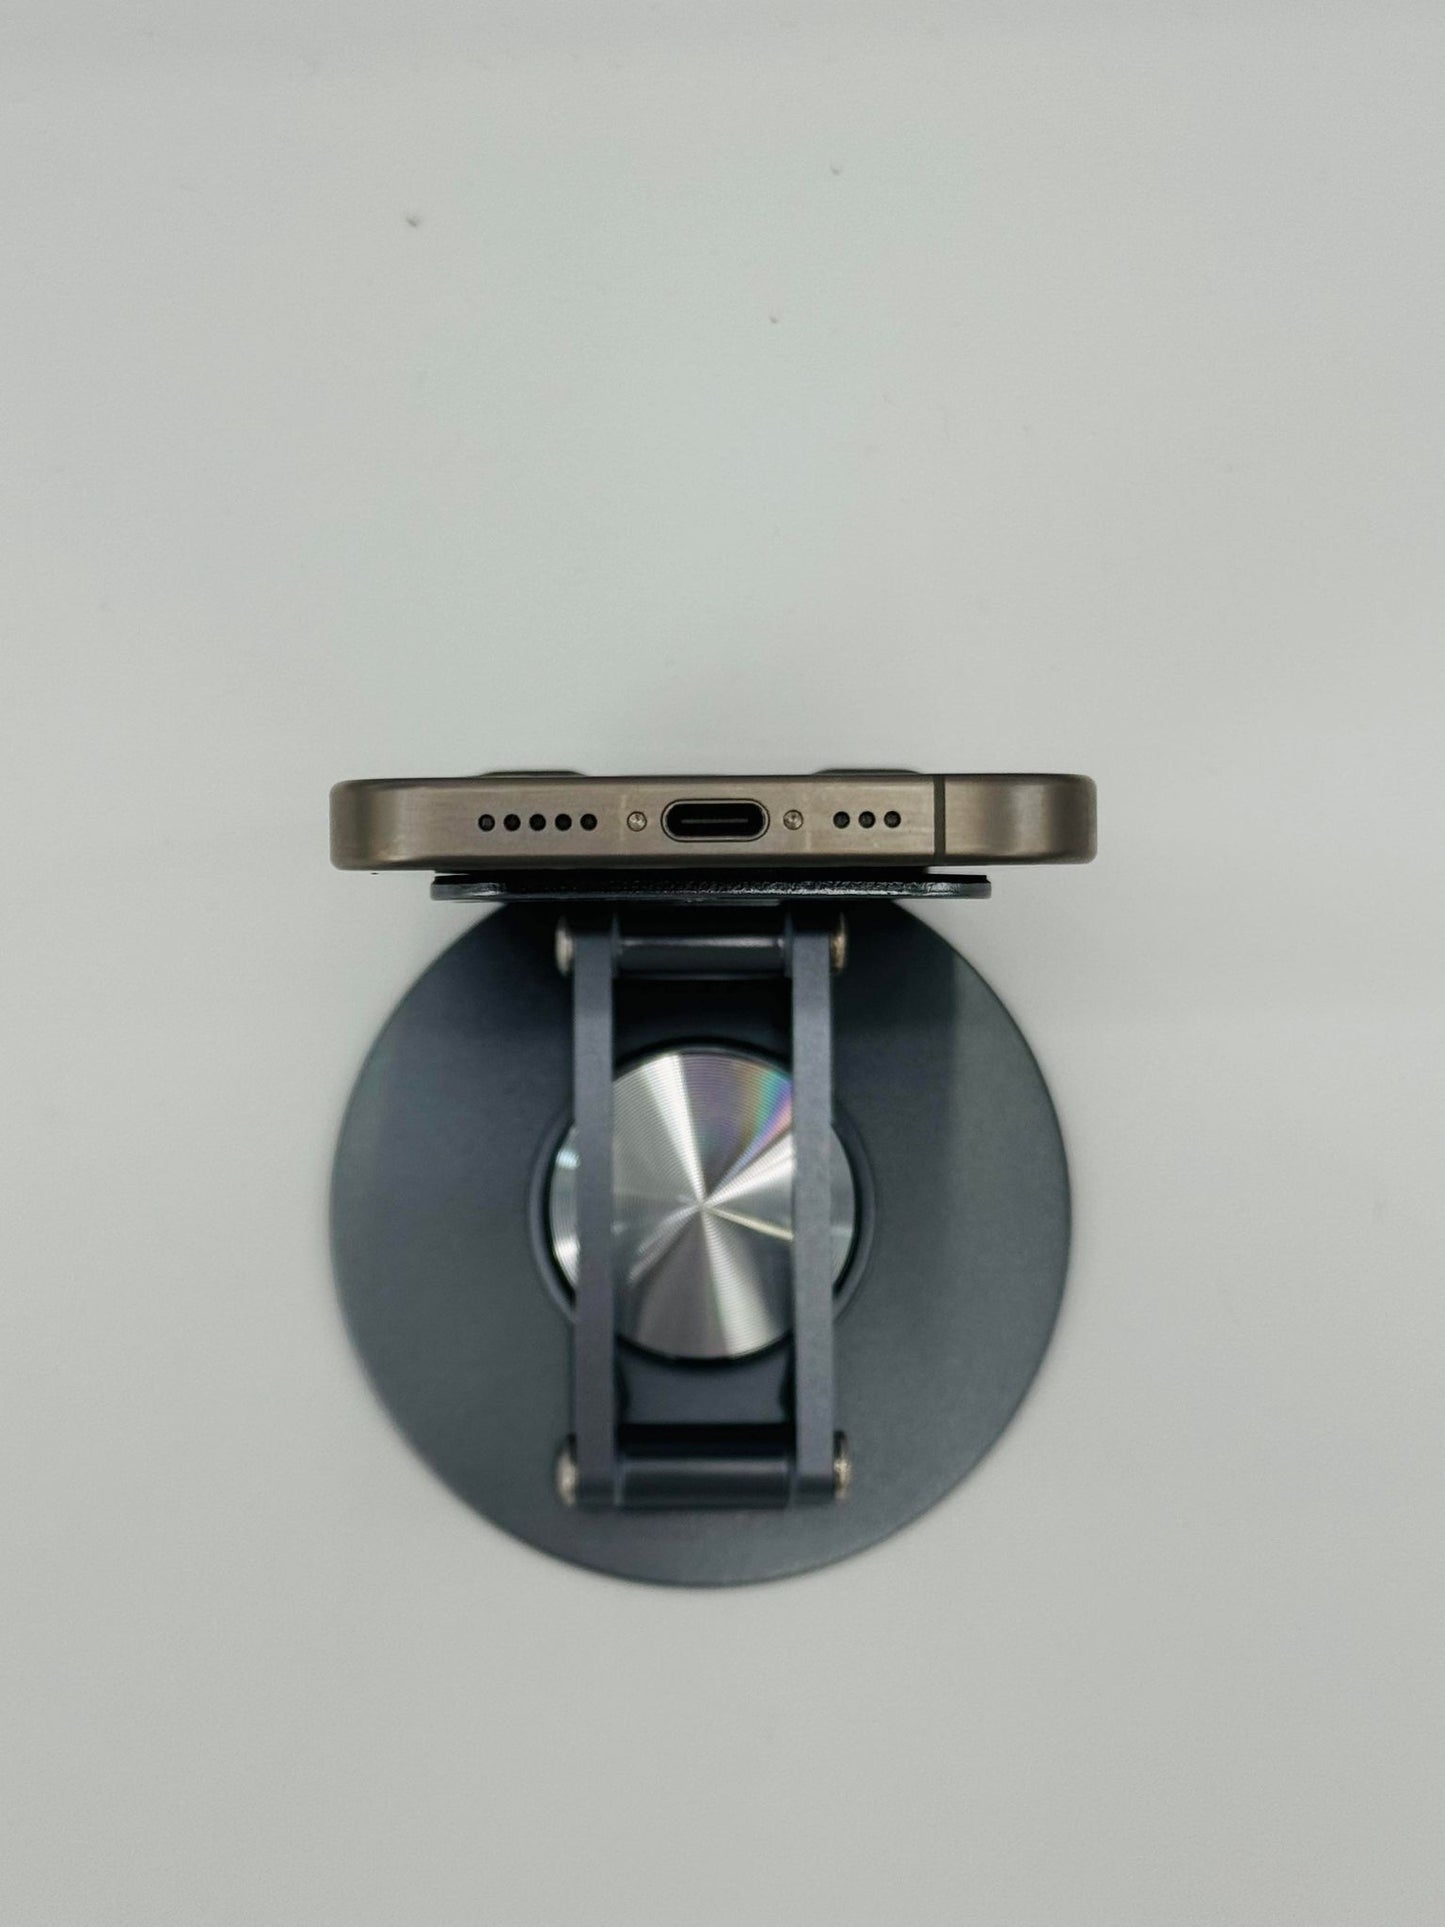 IPhone 15 Pro 256gb Màu Titan, Pin zin 100%, Máy zin chưa qua thay sửa